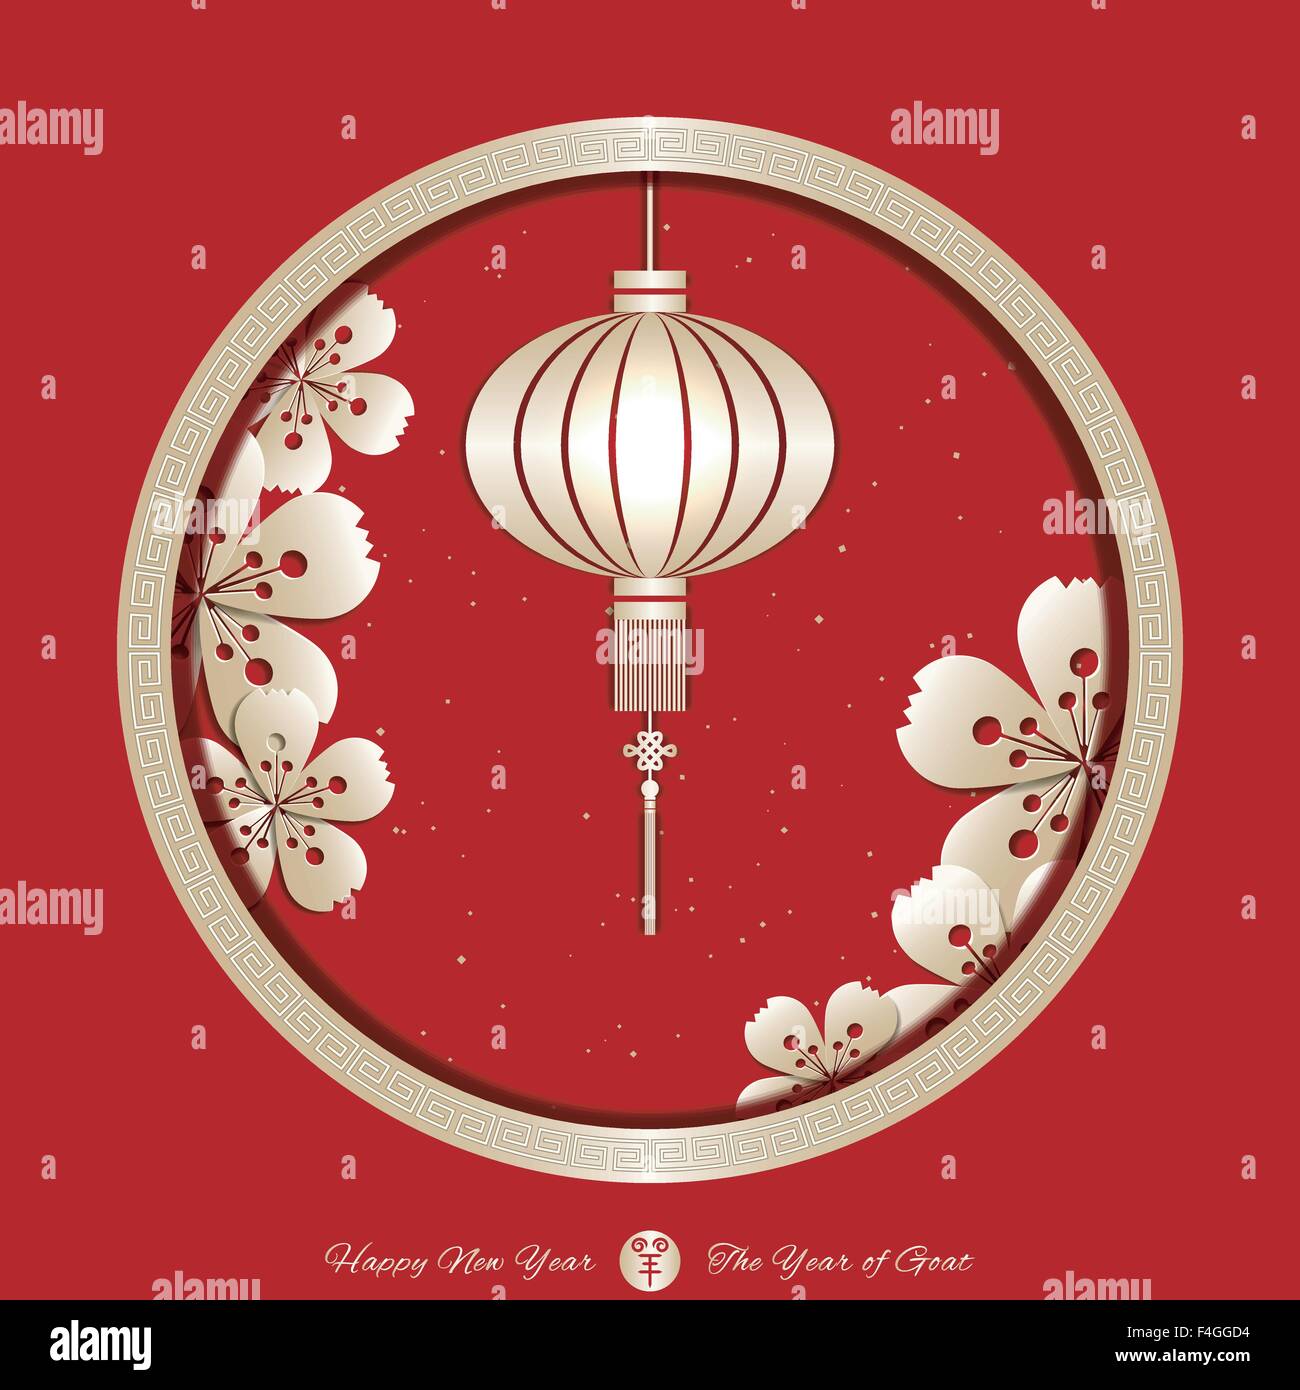 L'année de la Chèvre fond Nouvel An chinois.La traduction de 'Calligraphie chinoise Yang'means Année de bouc Illustration de Vecteur